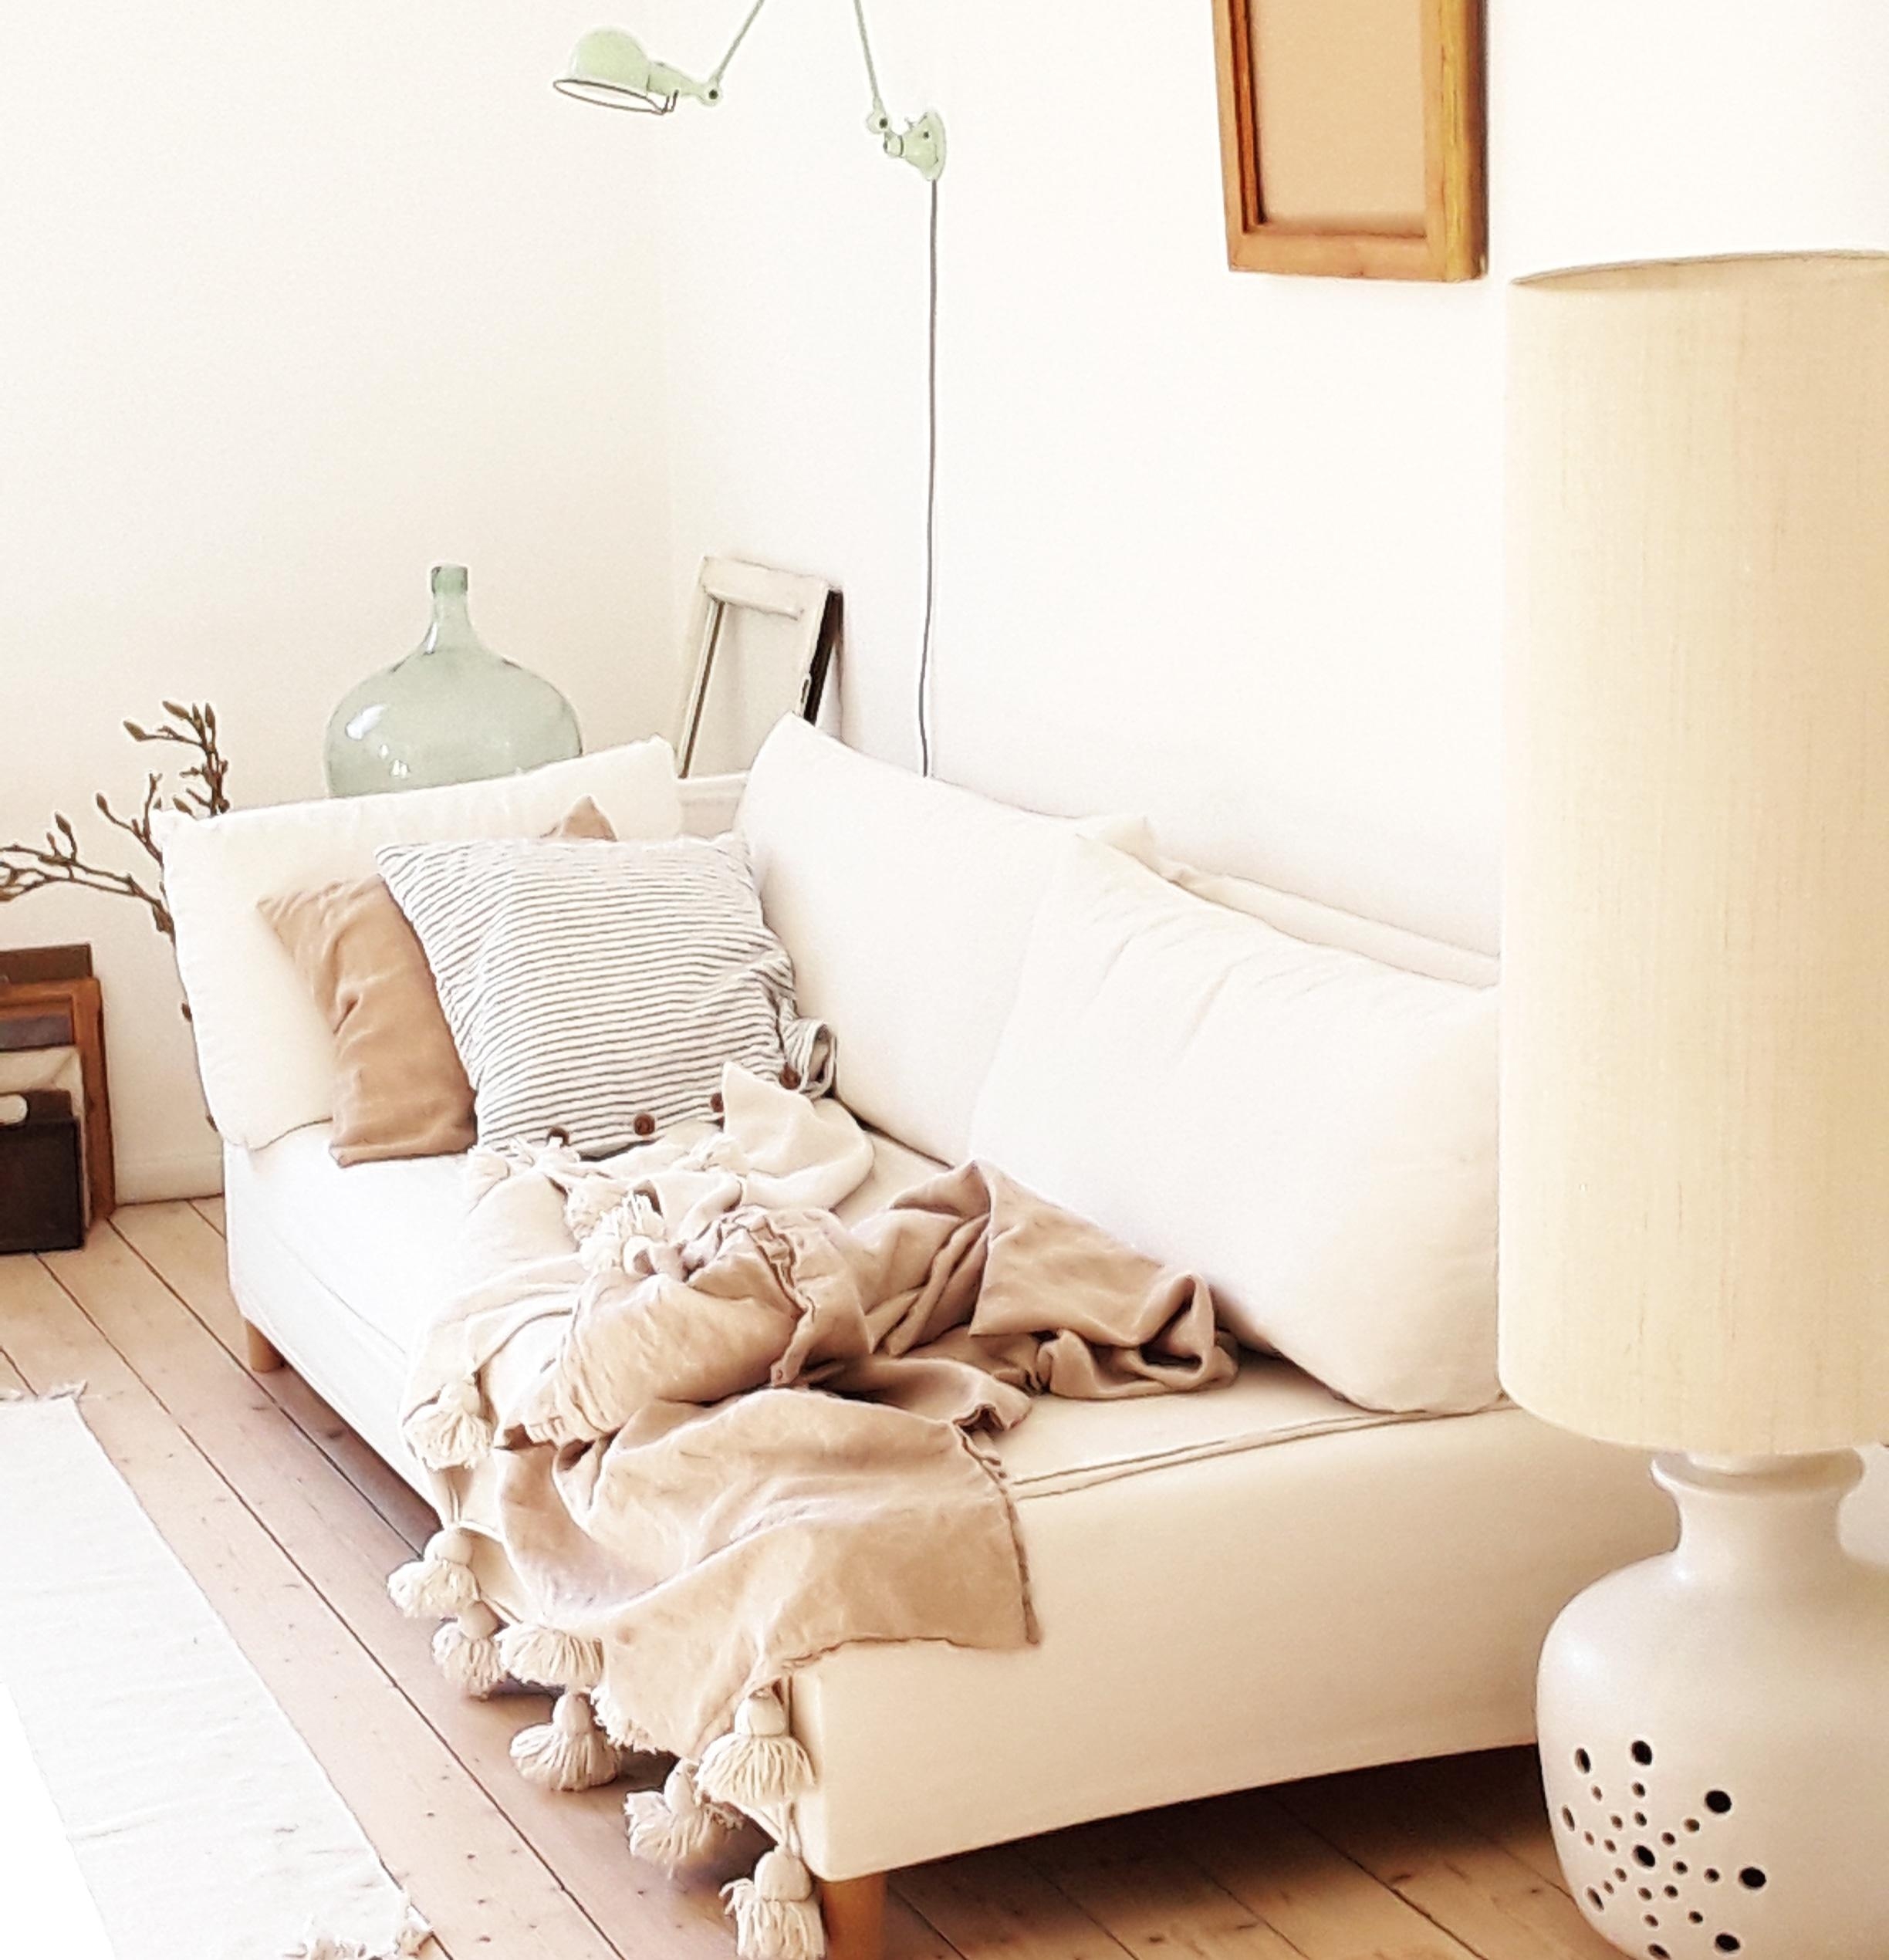 #Couchstyling 😁
#lampe #jielde #leinen #kissen #couch